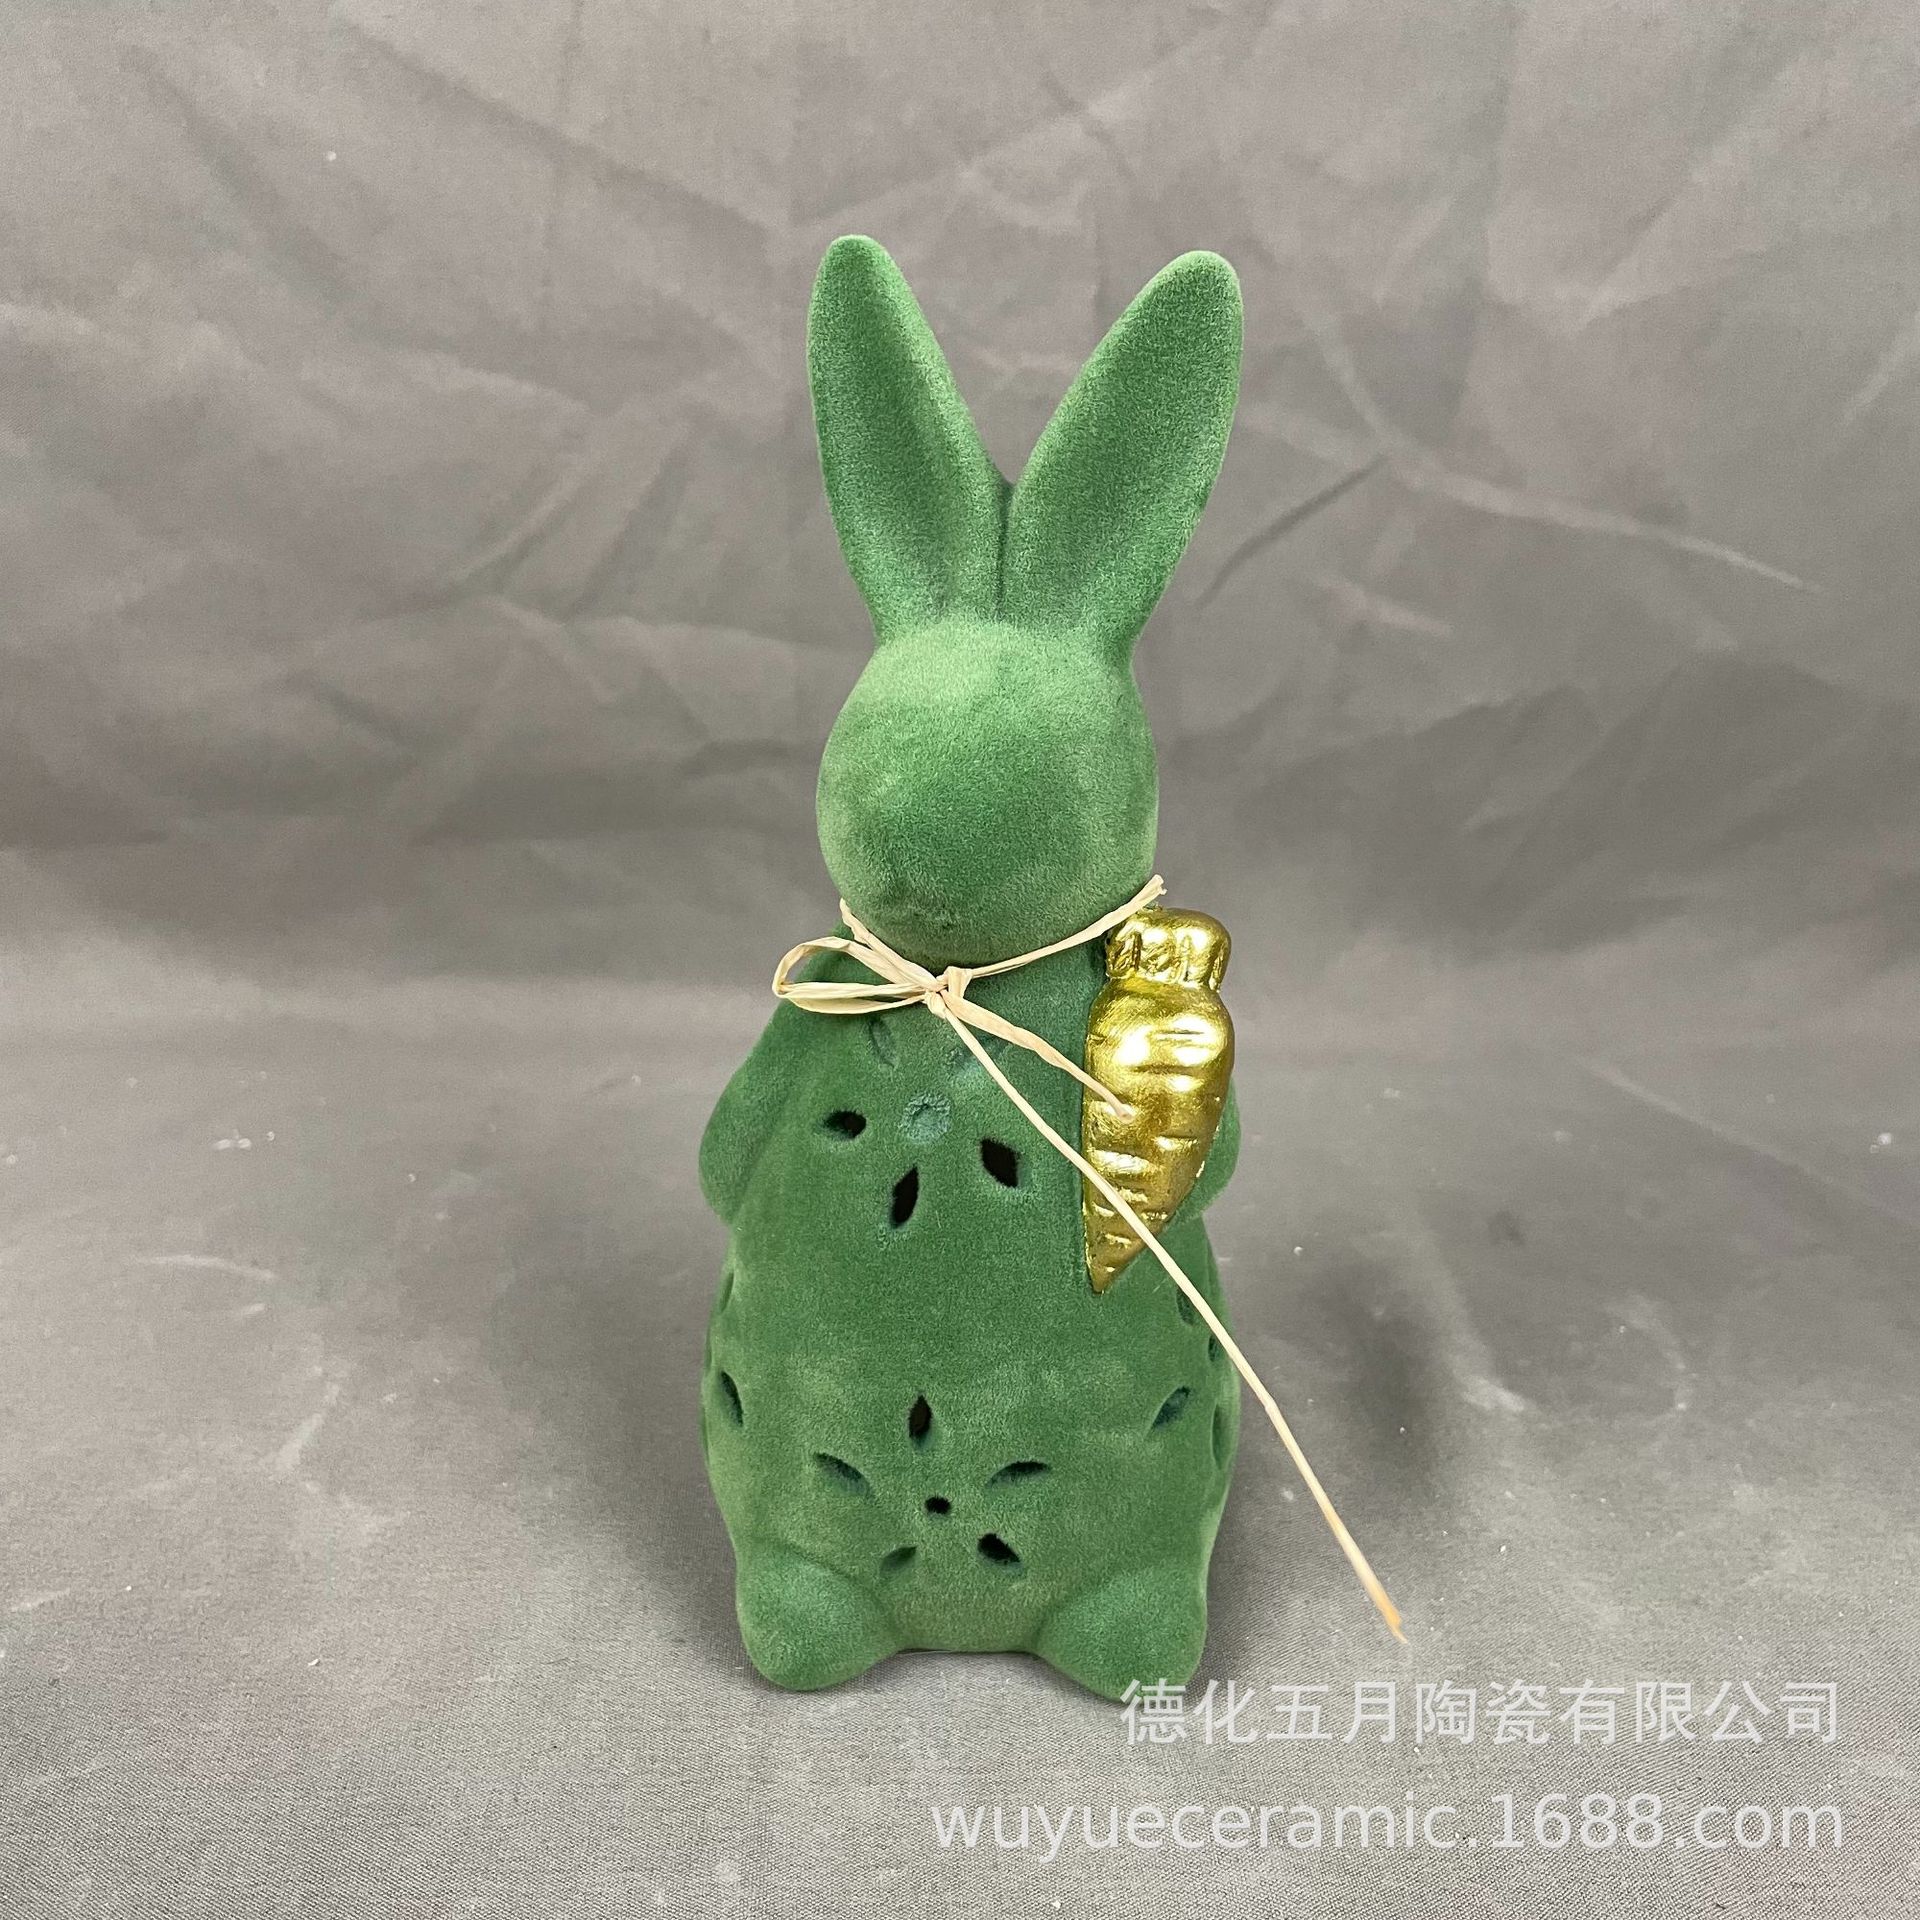 陶瓷工艺品摆件创意复活节装饰兔子摆件桌面装饰植绒小兔子装饰品